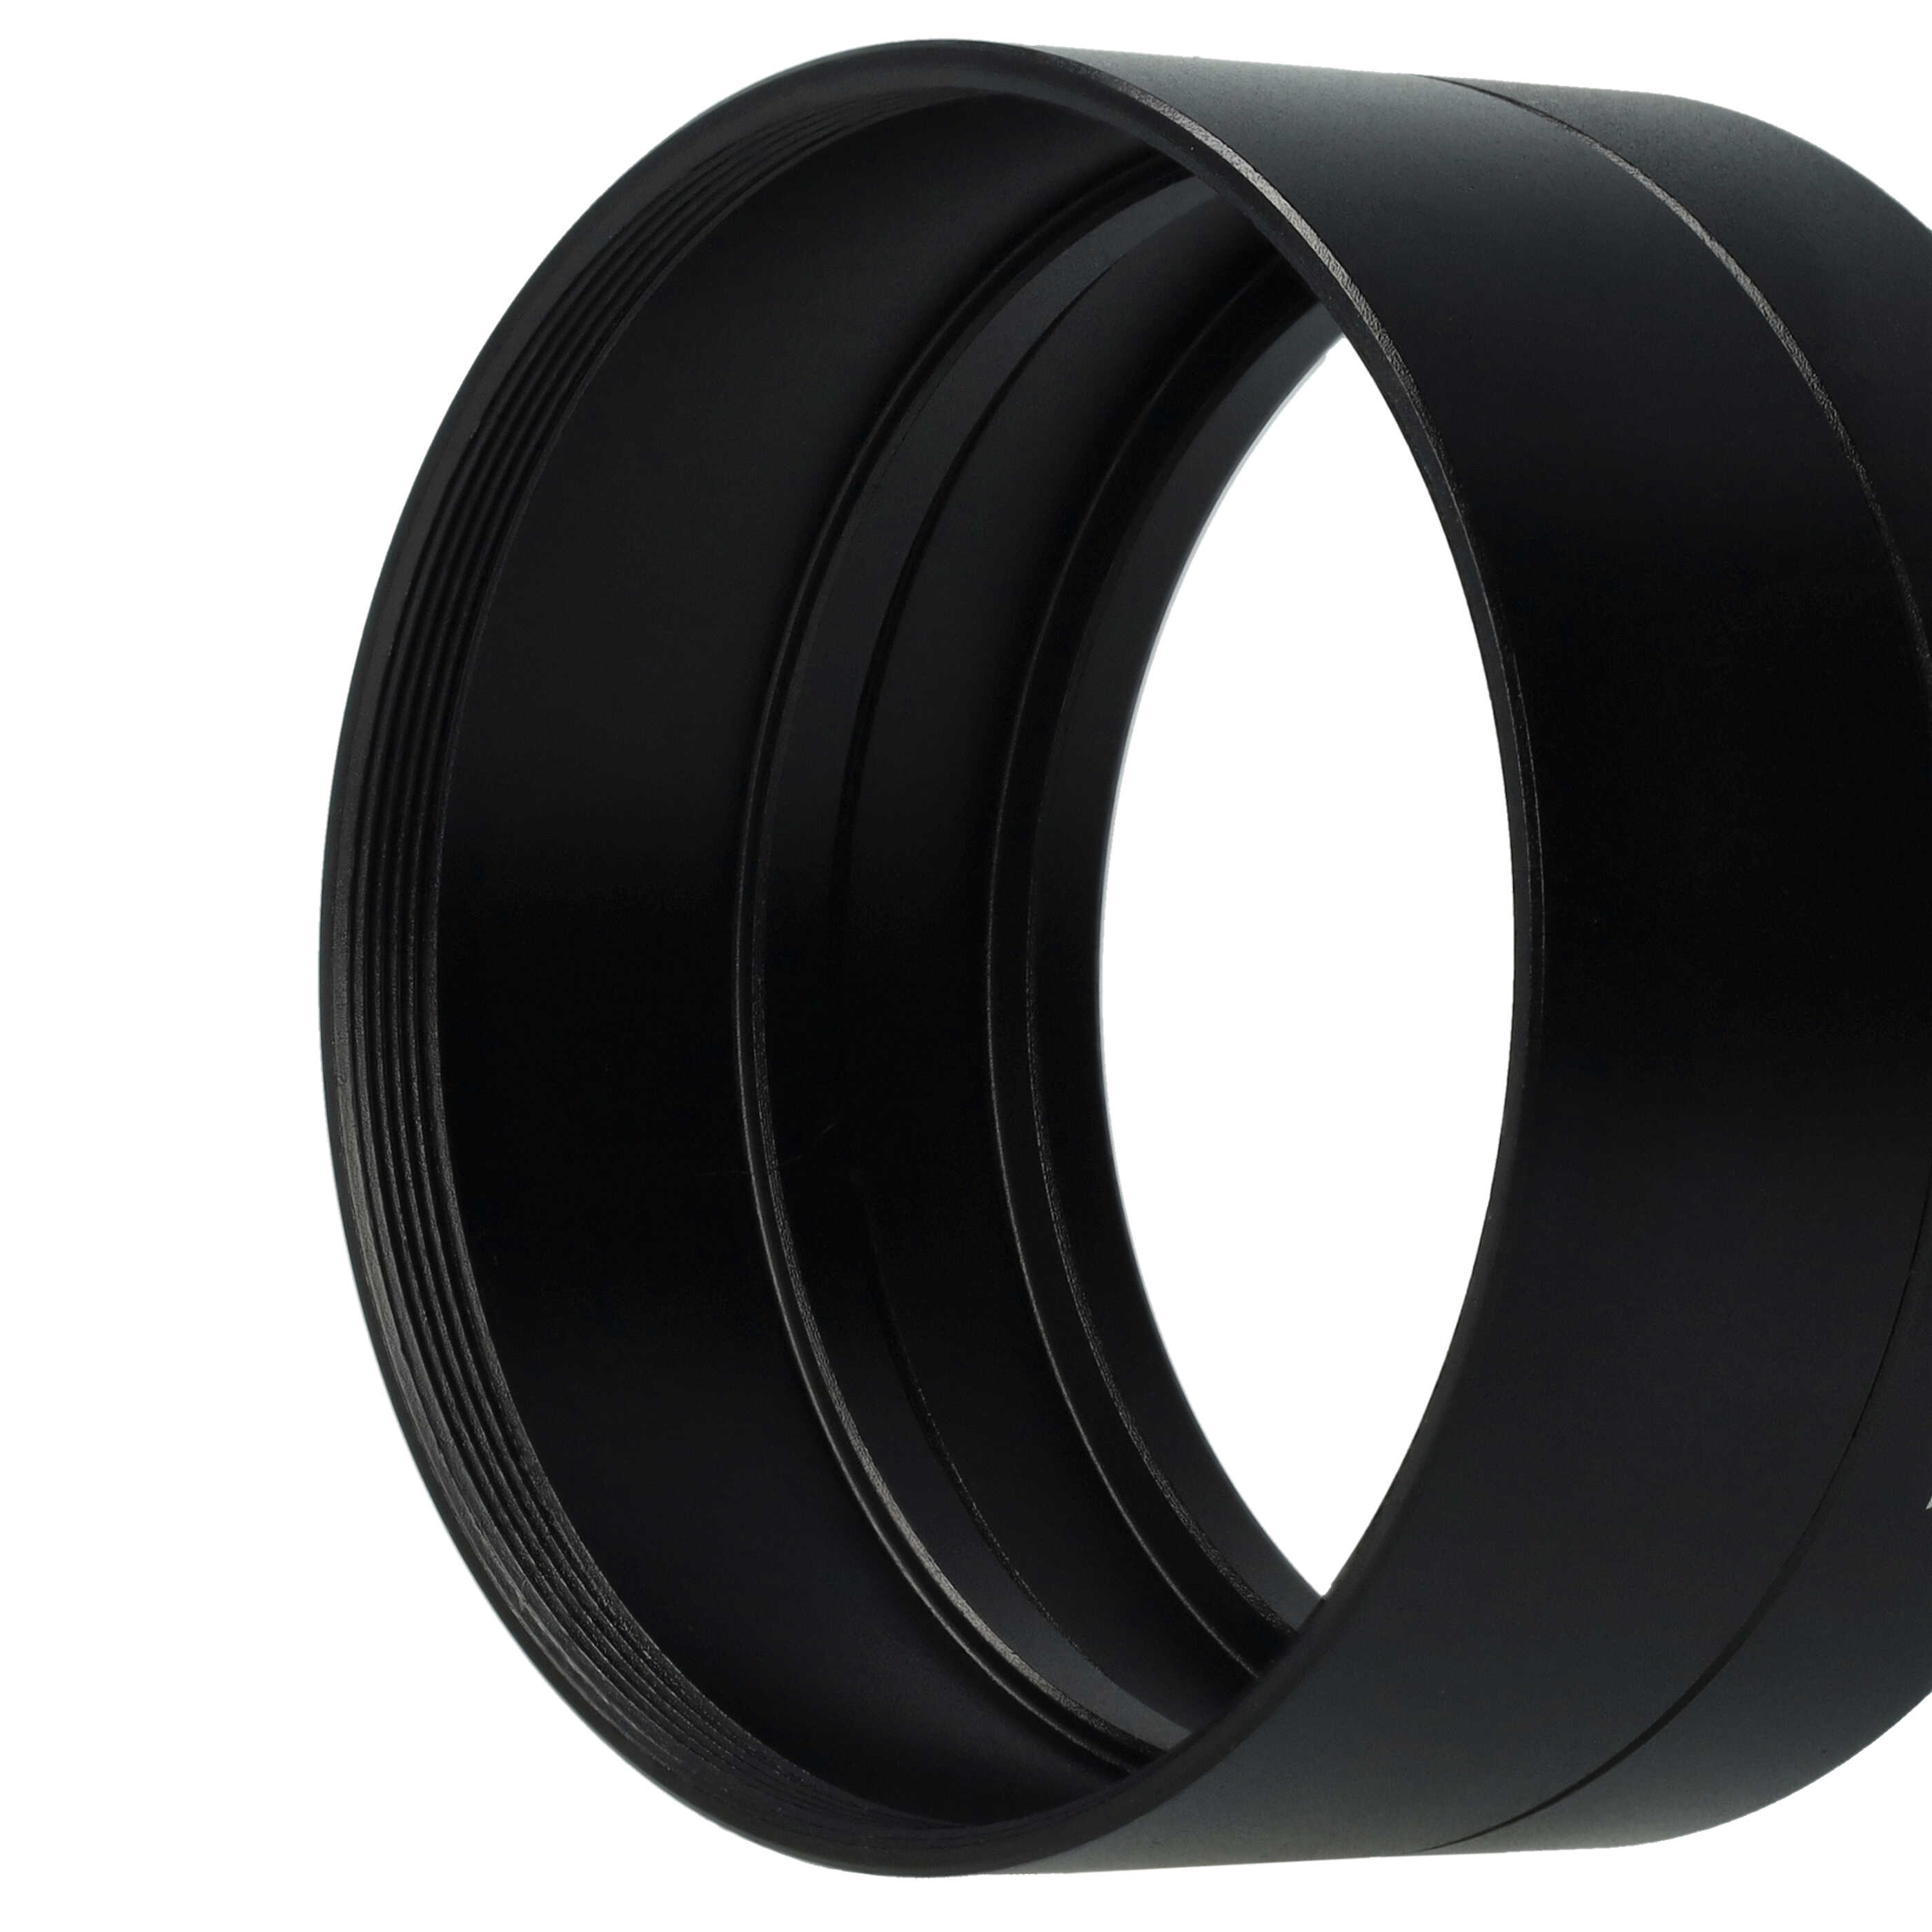 58 mm Filter Adapter, Tubular suitable for Panasonic Lumix DMC-FZ18 Camera Lens